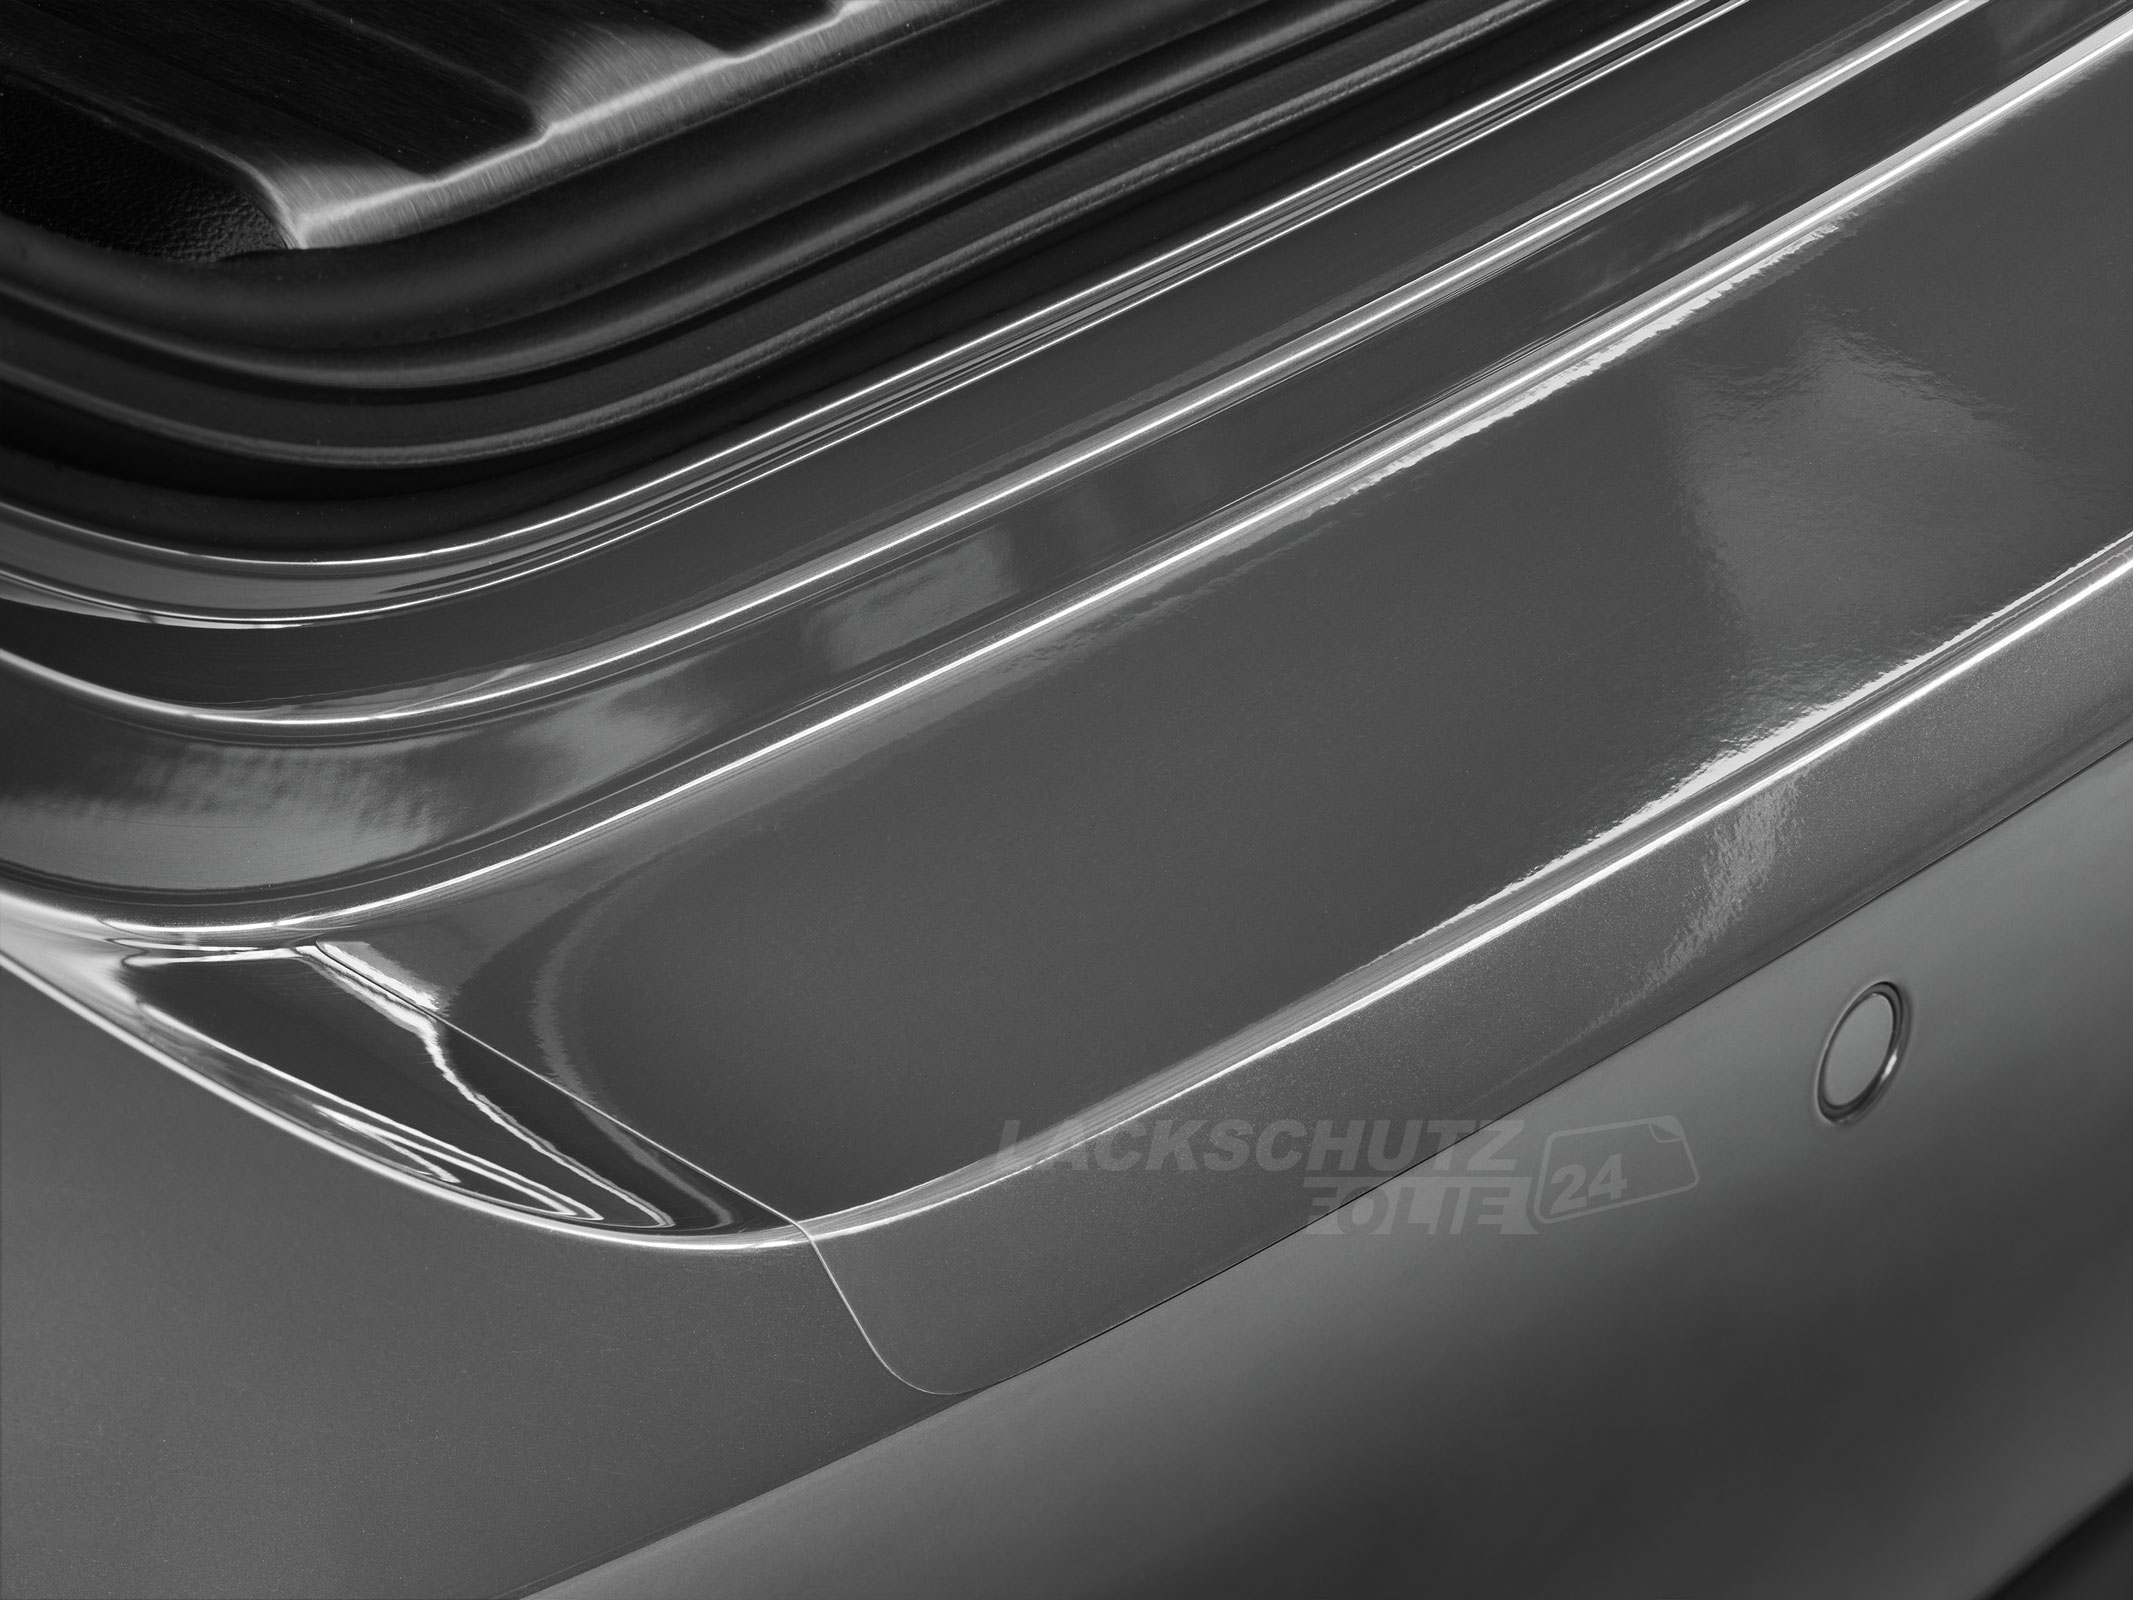 Ladekantenschutzfolie - Transparent Glatt Hochglänzend 240 µm stark für Audi A5 Coupé Typ 8T, BJ 03/2007-06/2016